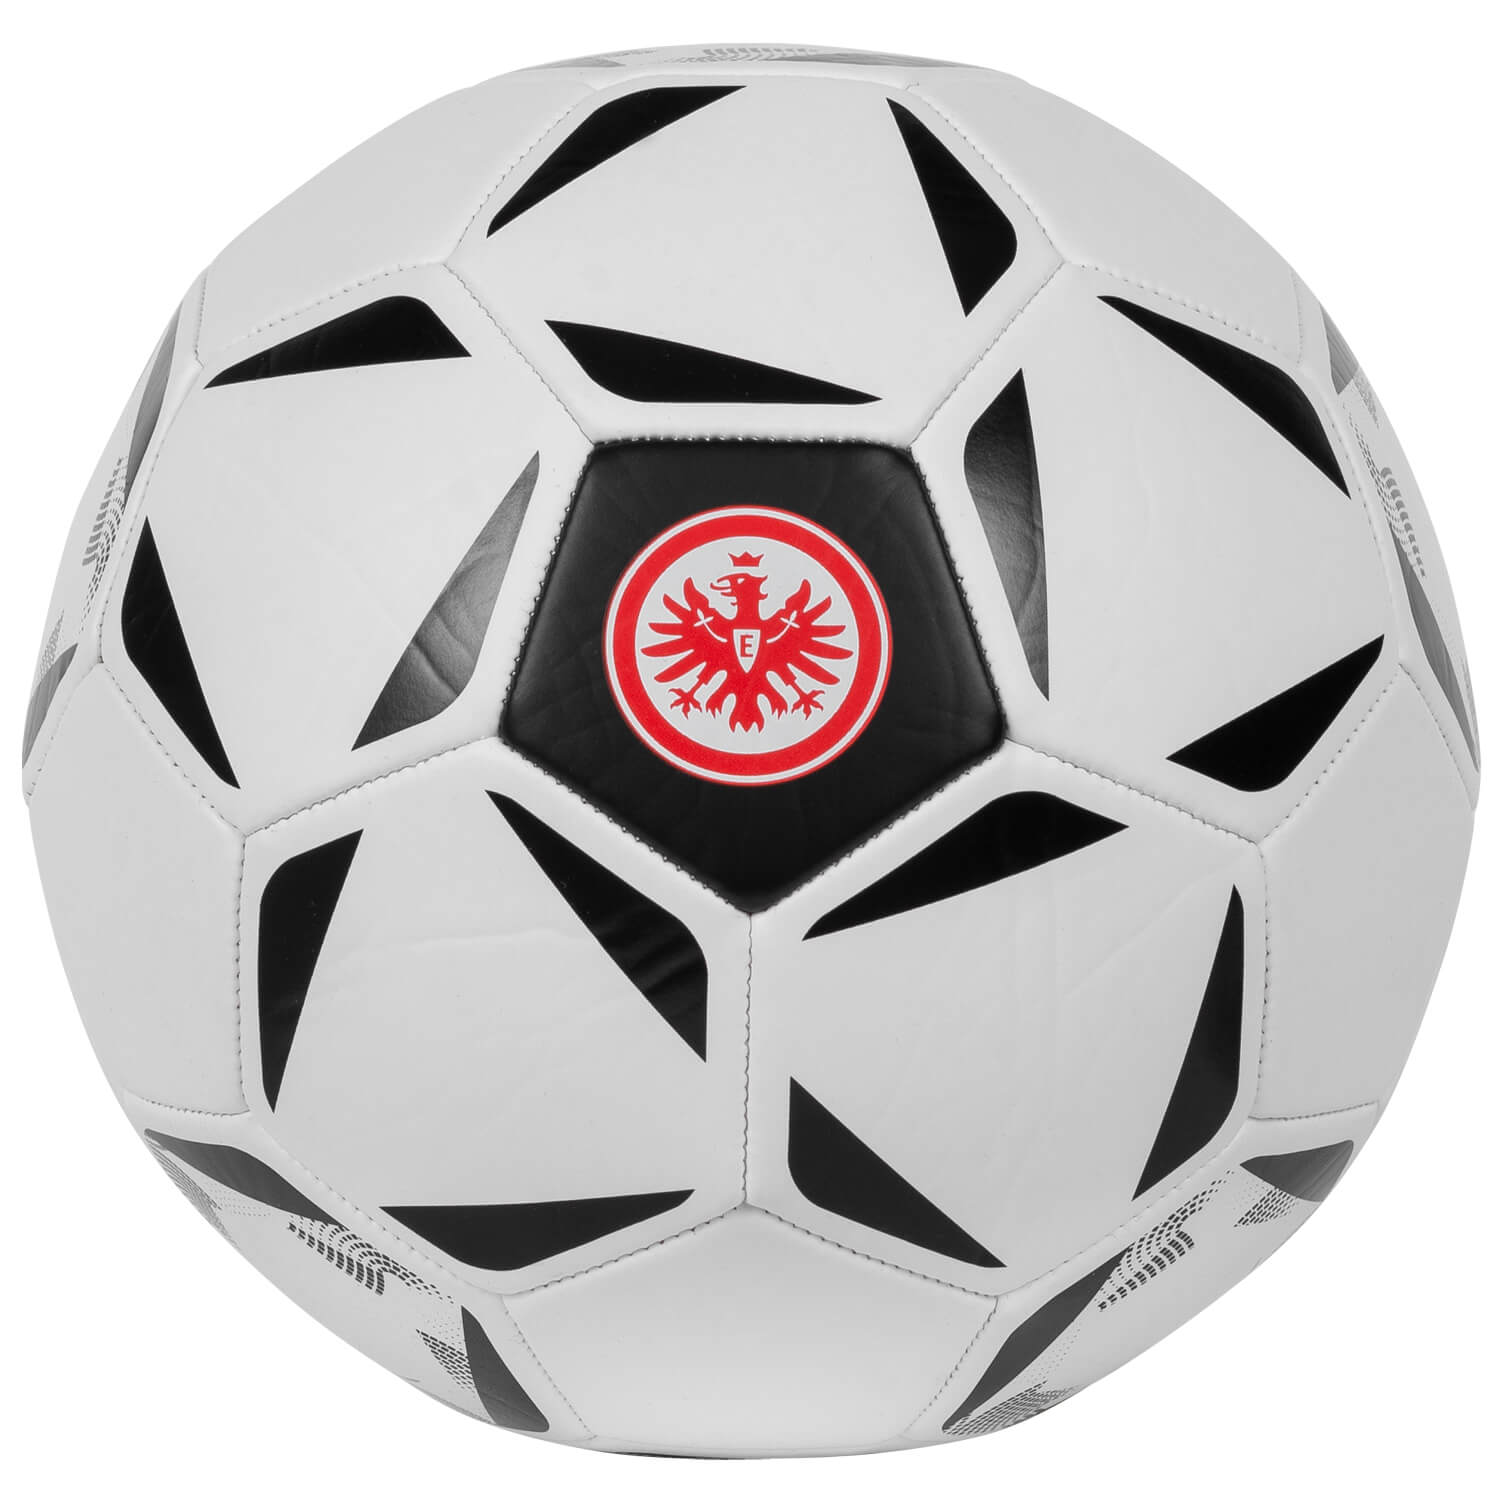 Bild 1: Eintracht Ball Elemente